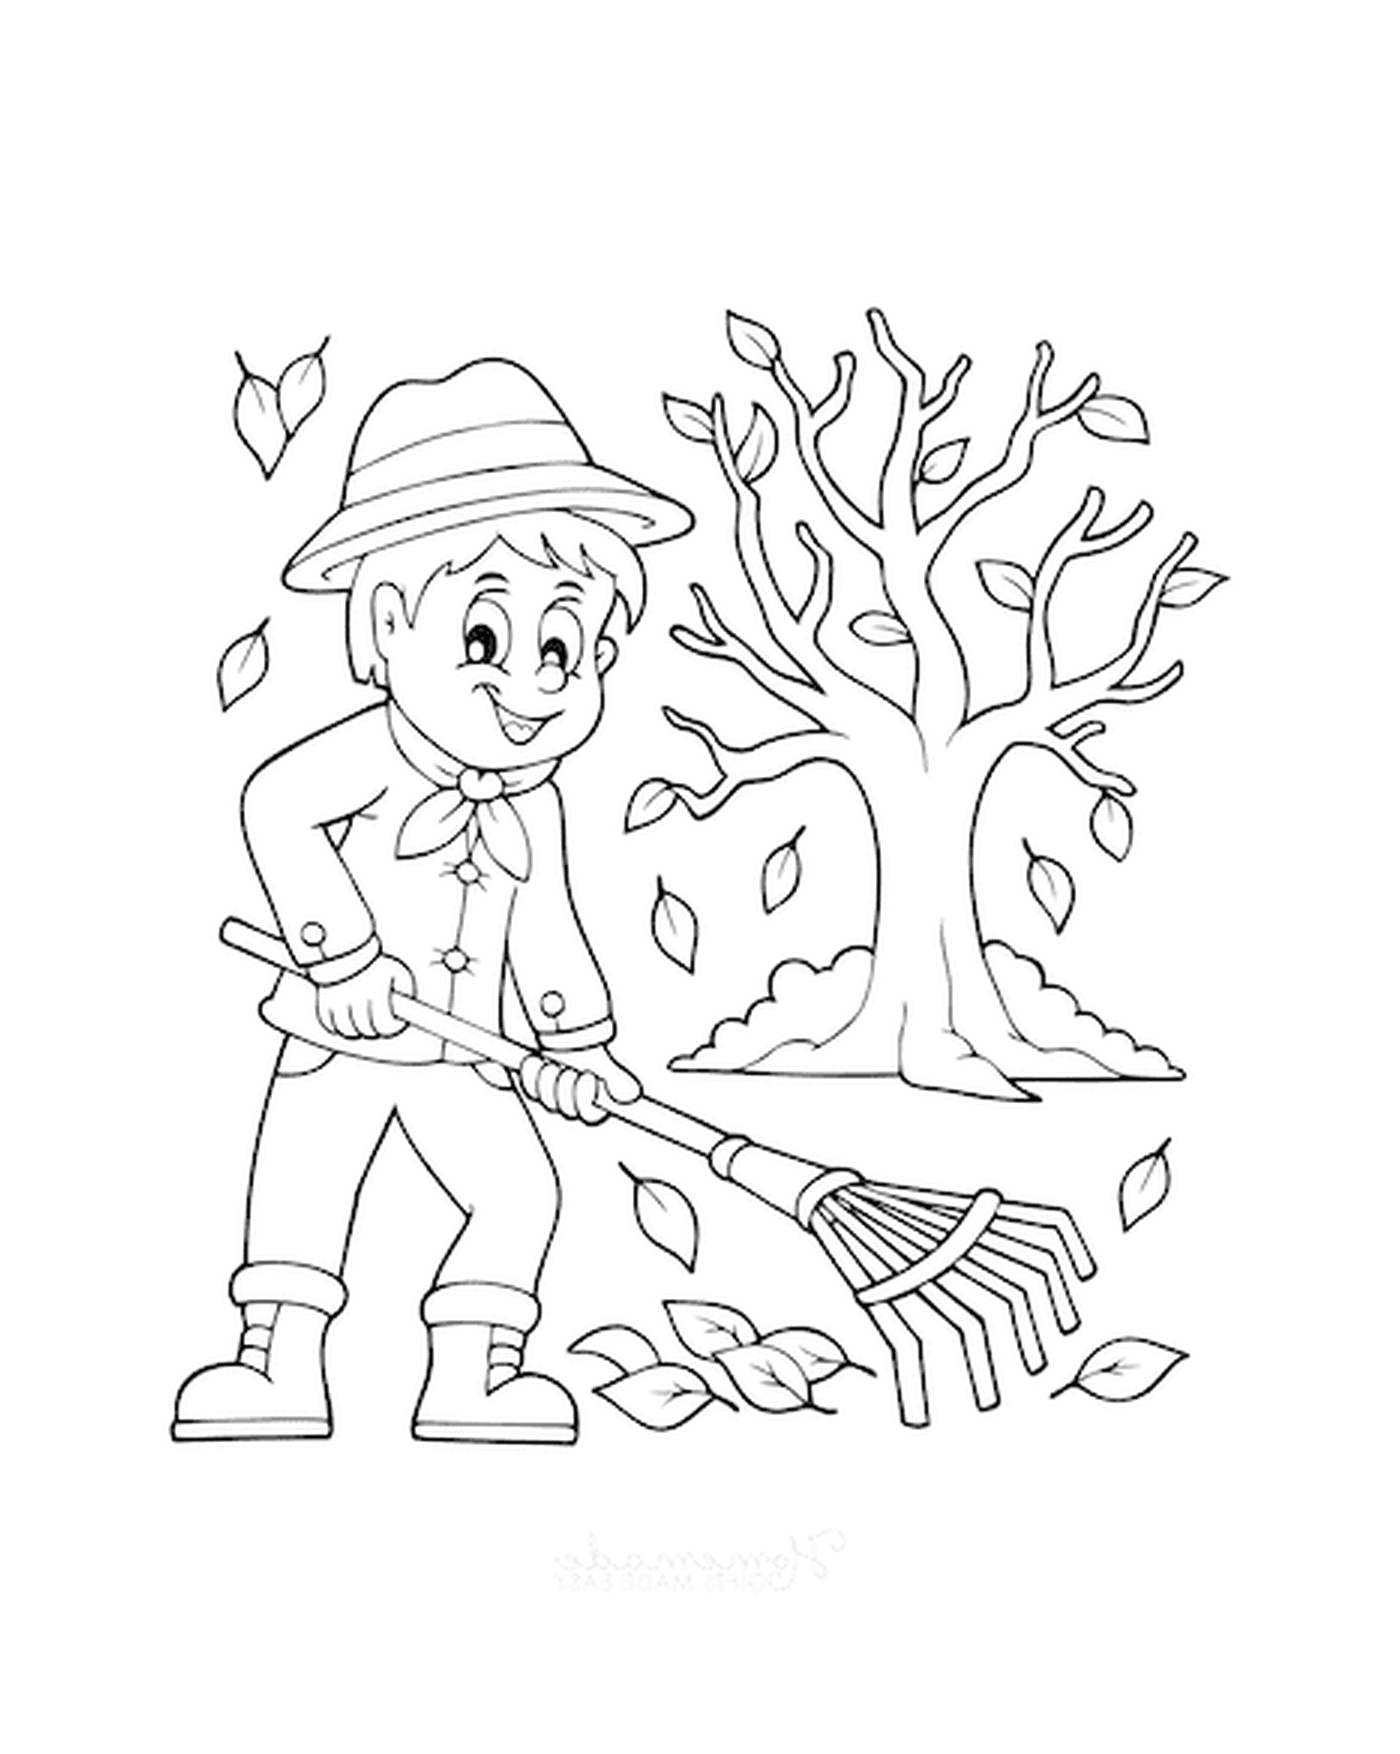  Ein Junge klappert die Blätter vor einem Baum 